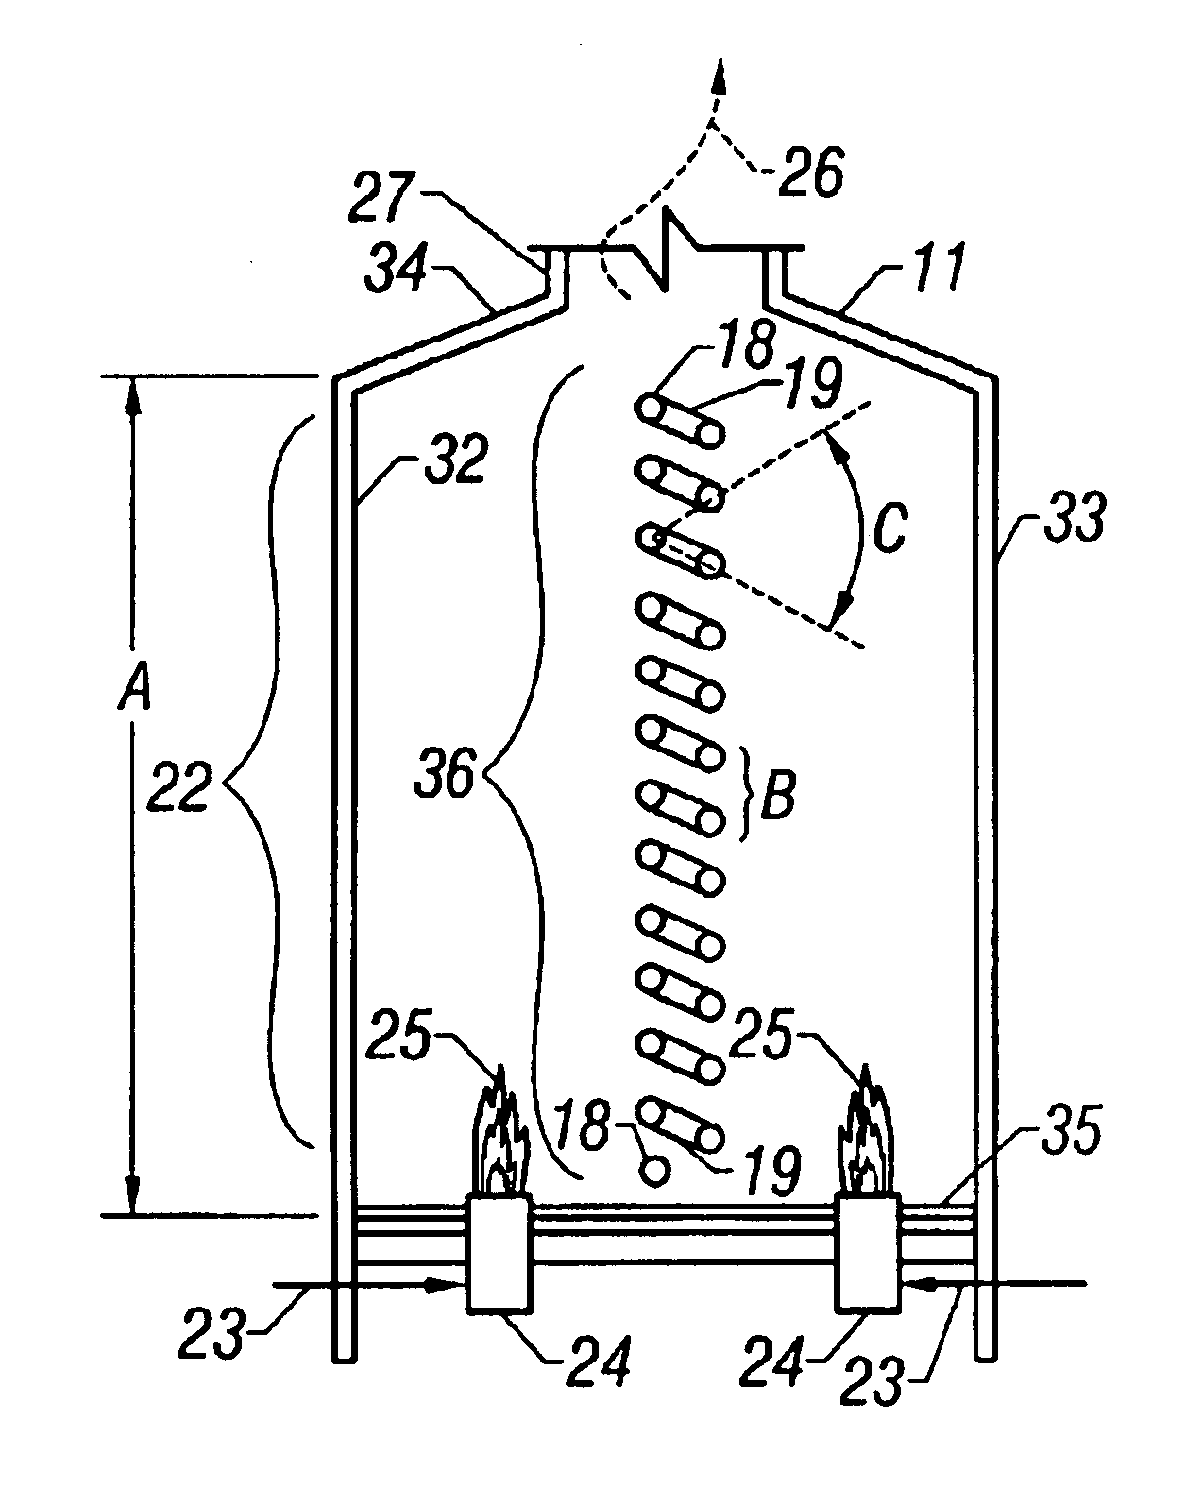 Alternate coke furnace tube arrangement